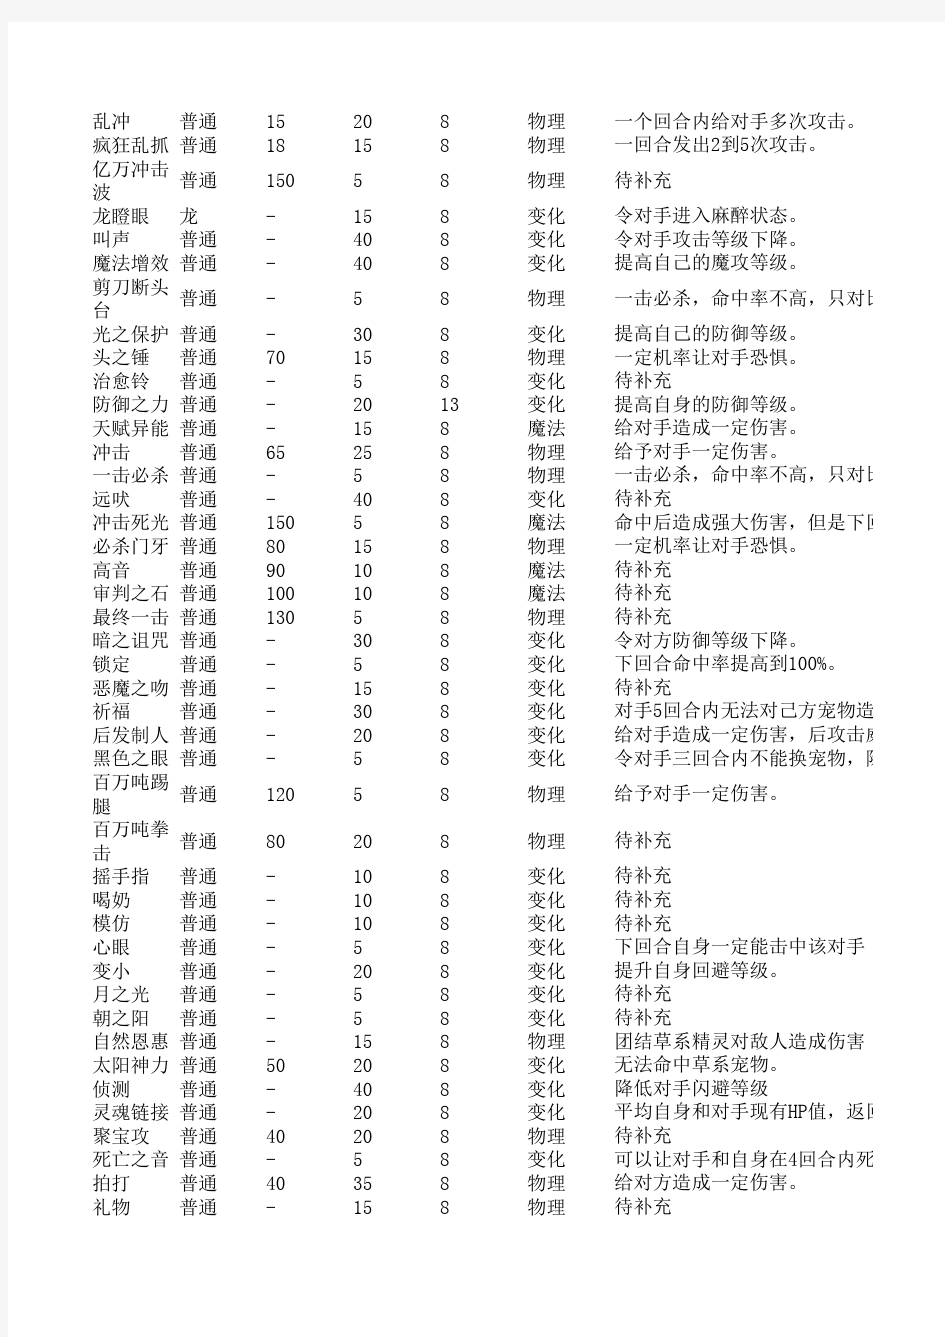 洛克王国技能大全【最全】(截至2014年1月28日)